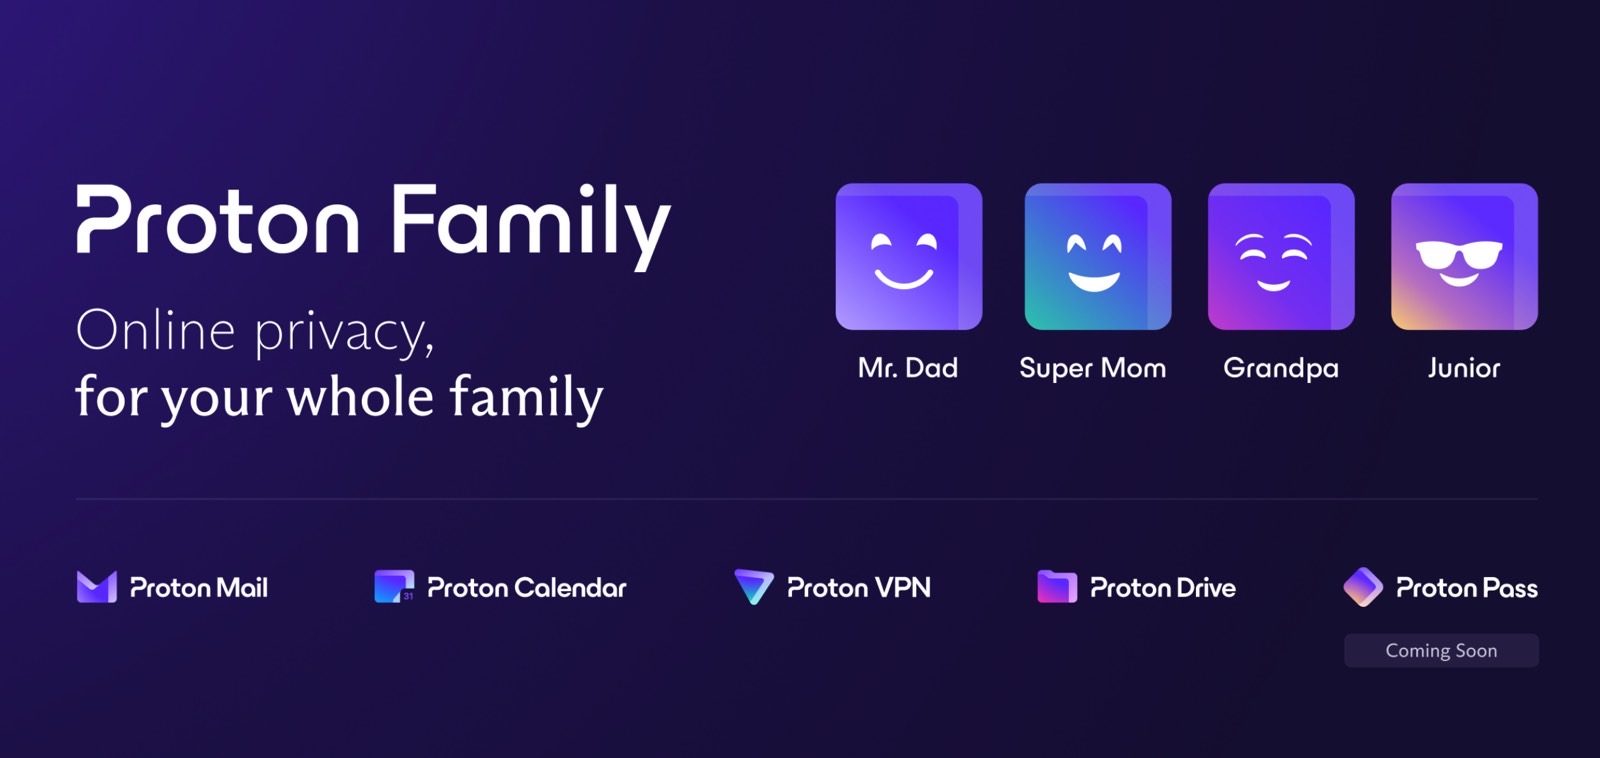 Proton Family Plan apps.